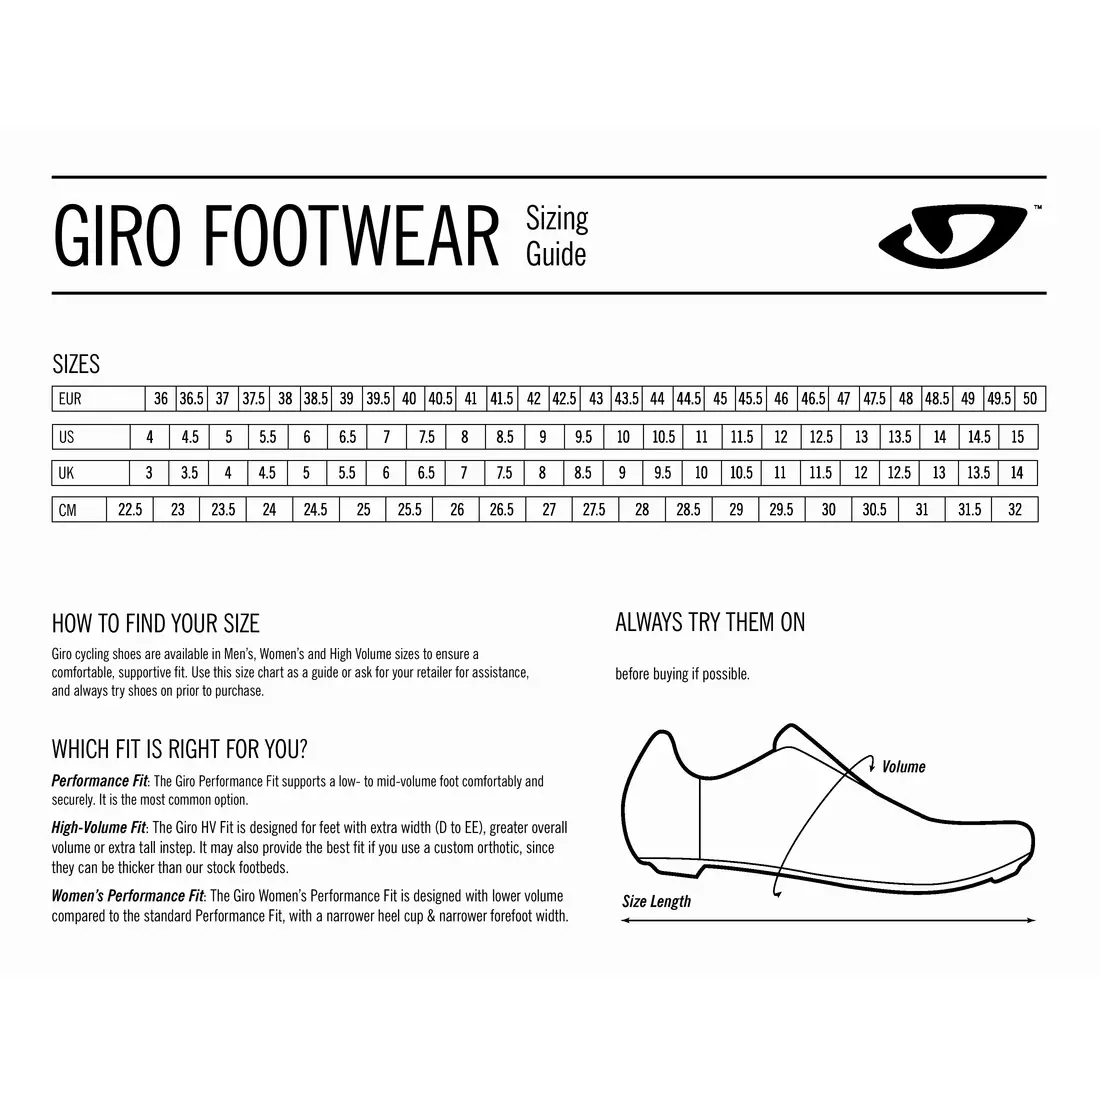 GIRO CYLINDER - Bărbați MTB pantofi de ciclism negru și roșu